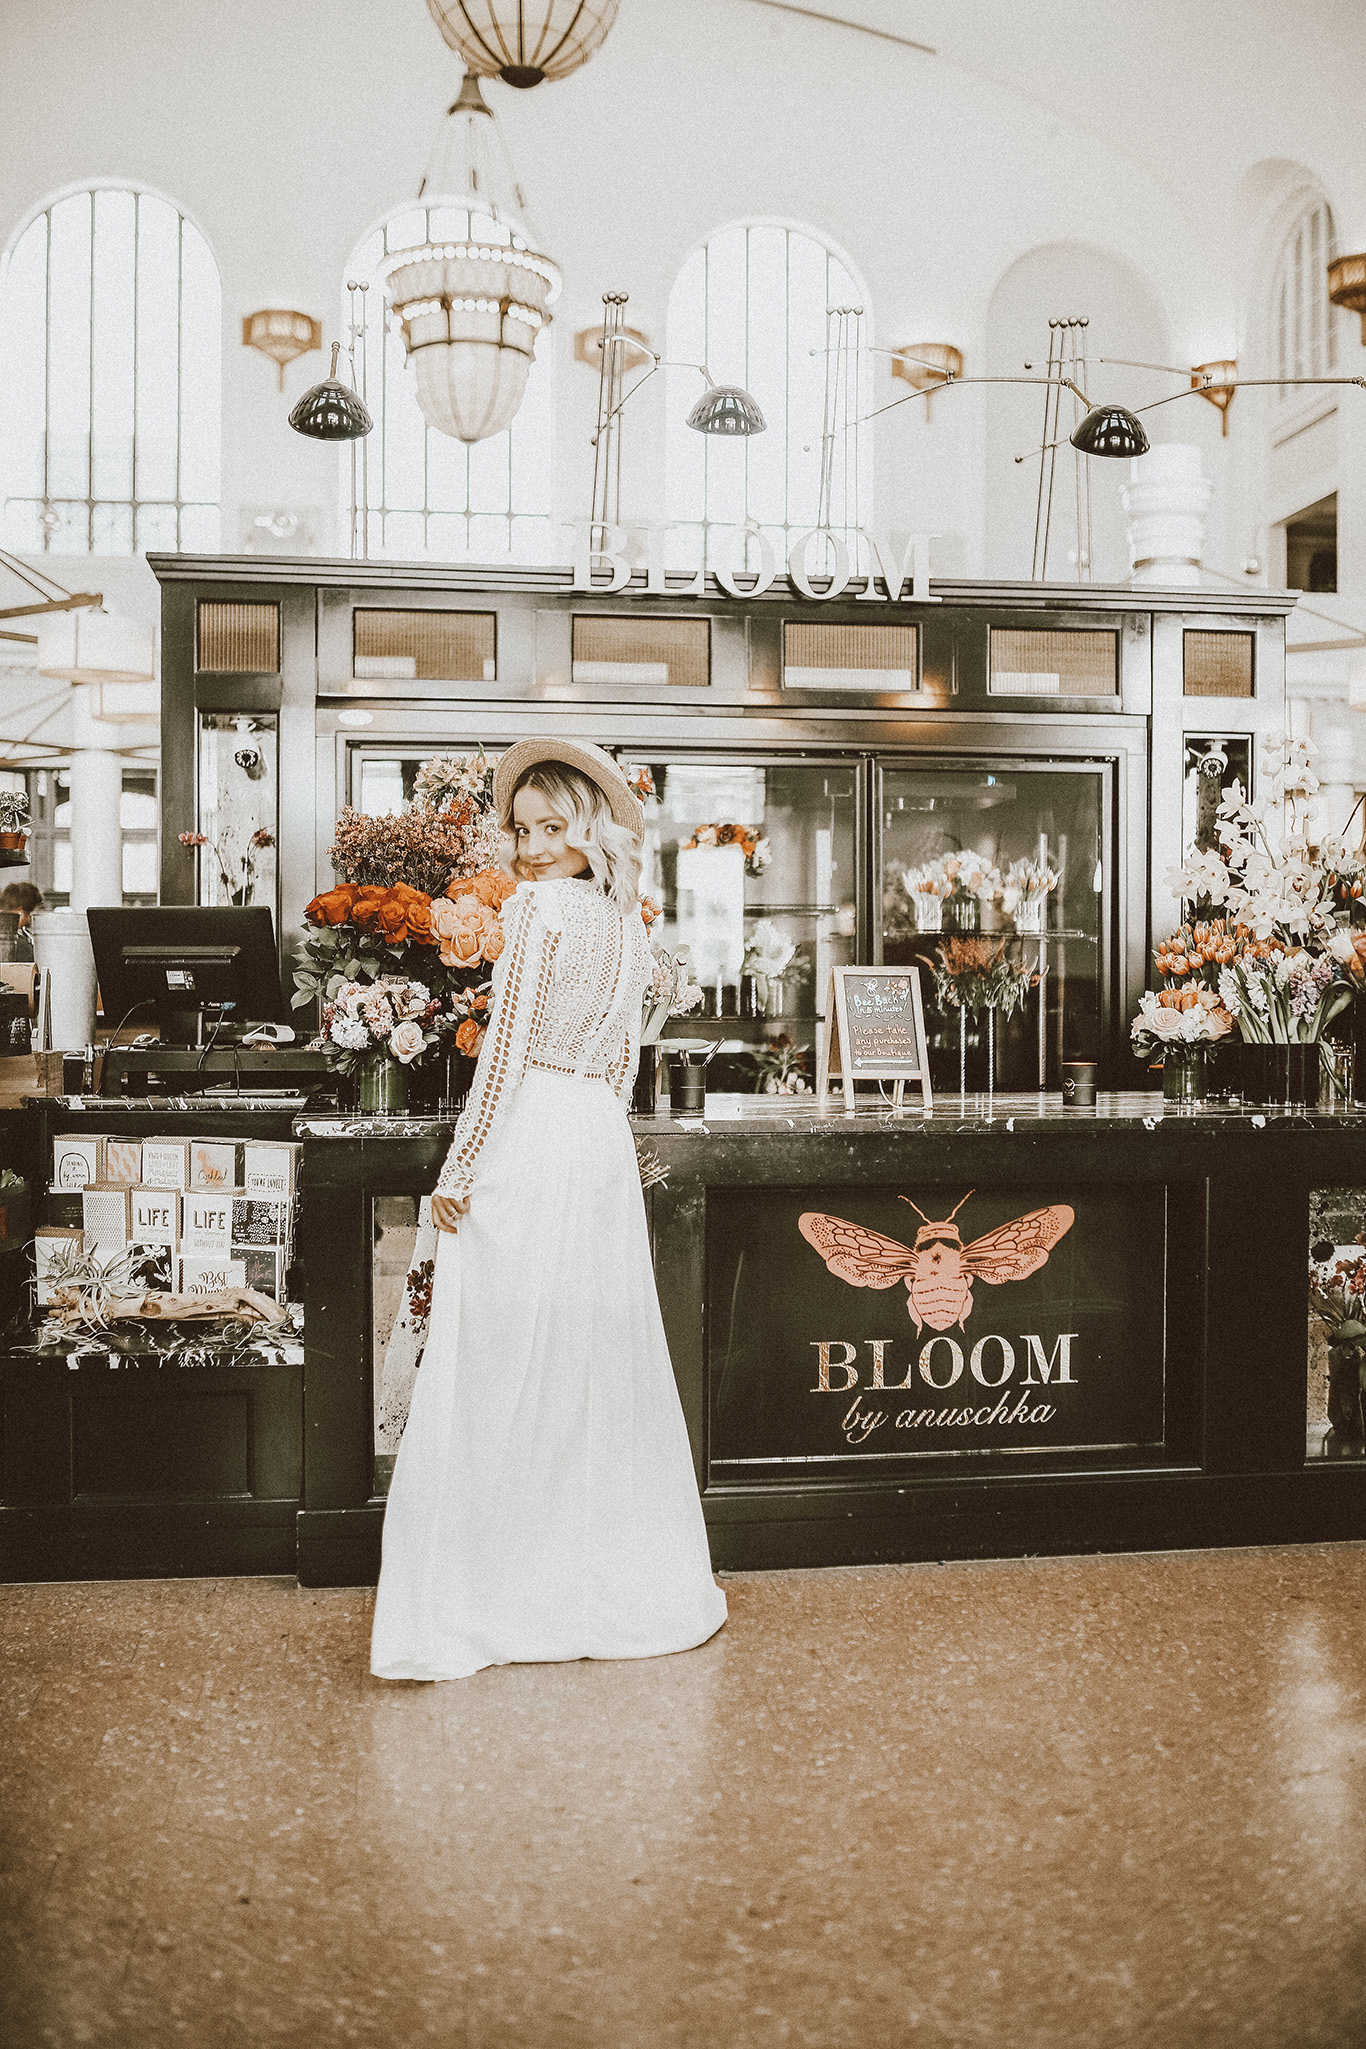 Alena Gidenko of mod prints.com shares 5 of her favorite white dresses for Spring